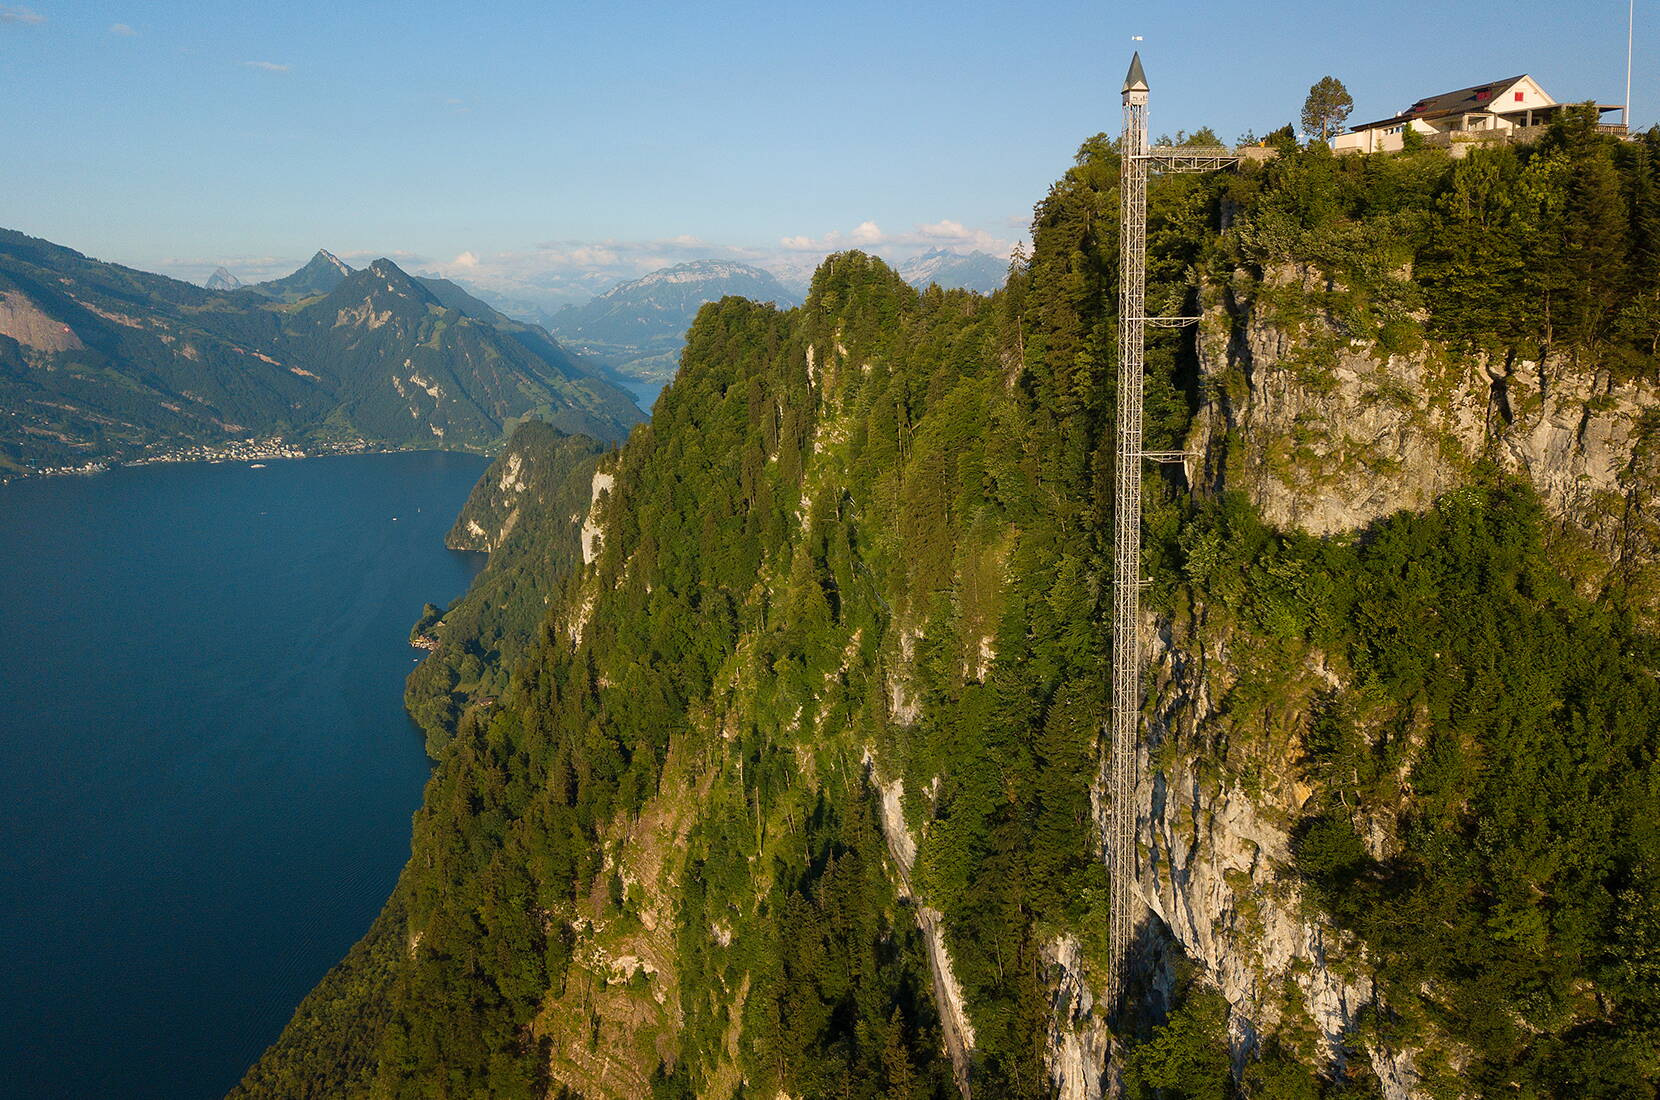 Der auf 1132 Meter gelegene Hammetschwand Lift ist der höchste Aussenlift Europas. Bereits vor 105 Jahren verschlug es den ersten Passagieren des Hammetschwand Lifts den Atem. 